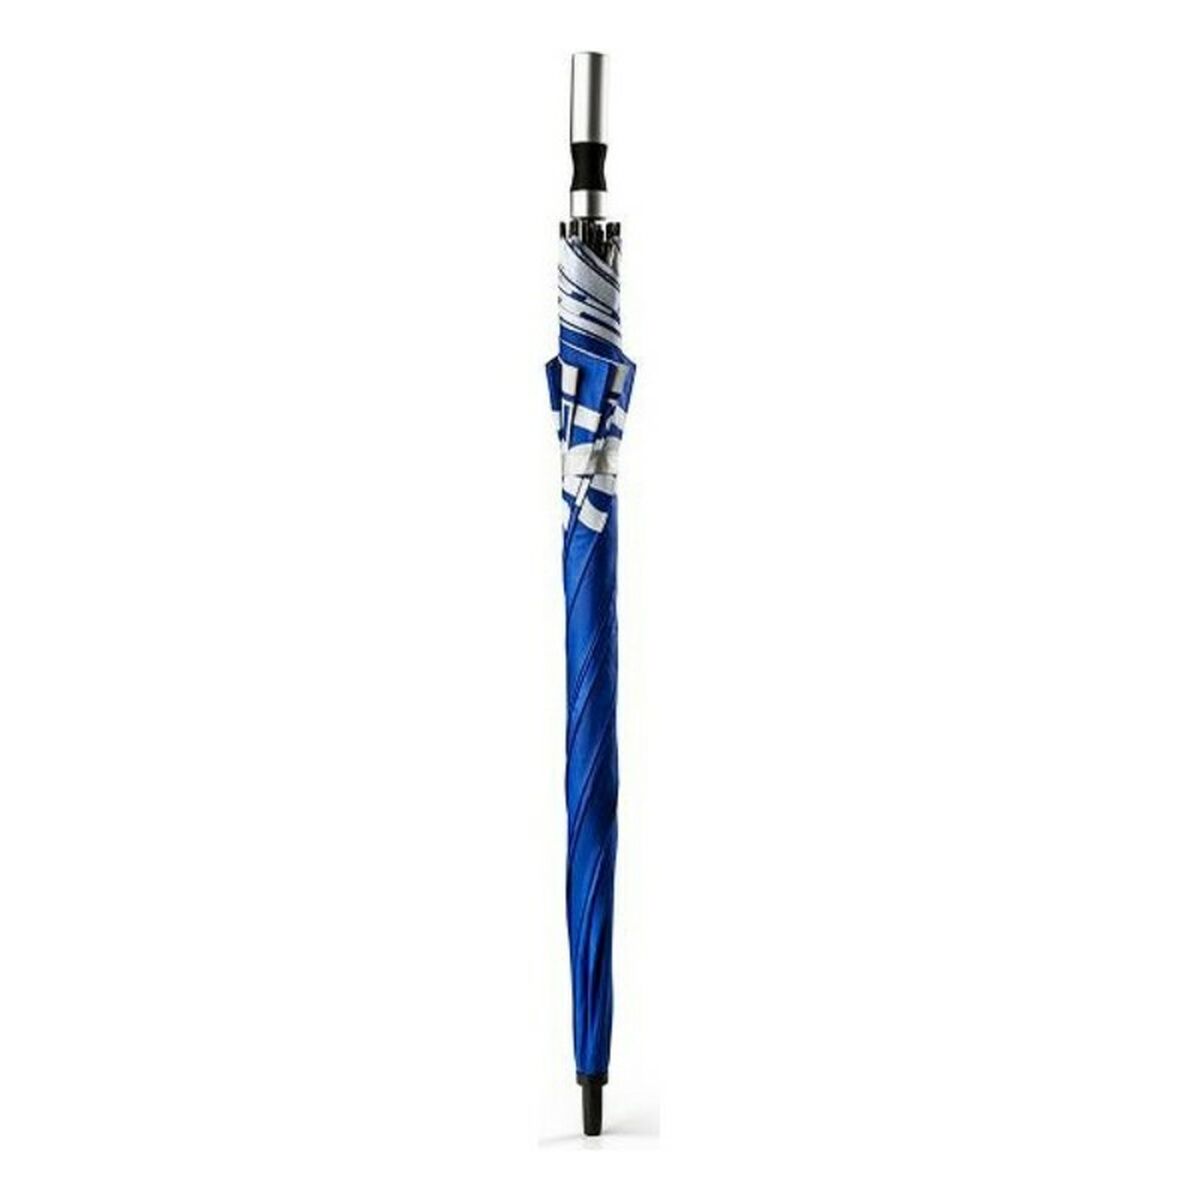 Parapluie Sparco 099068 Bleu